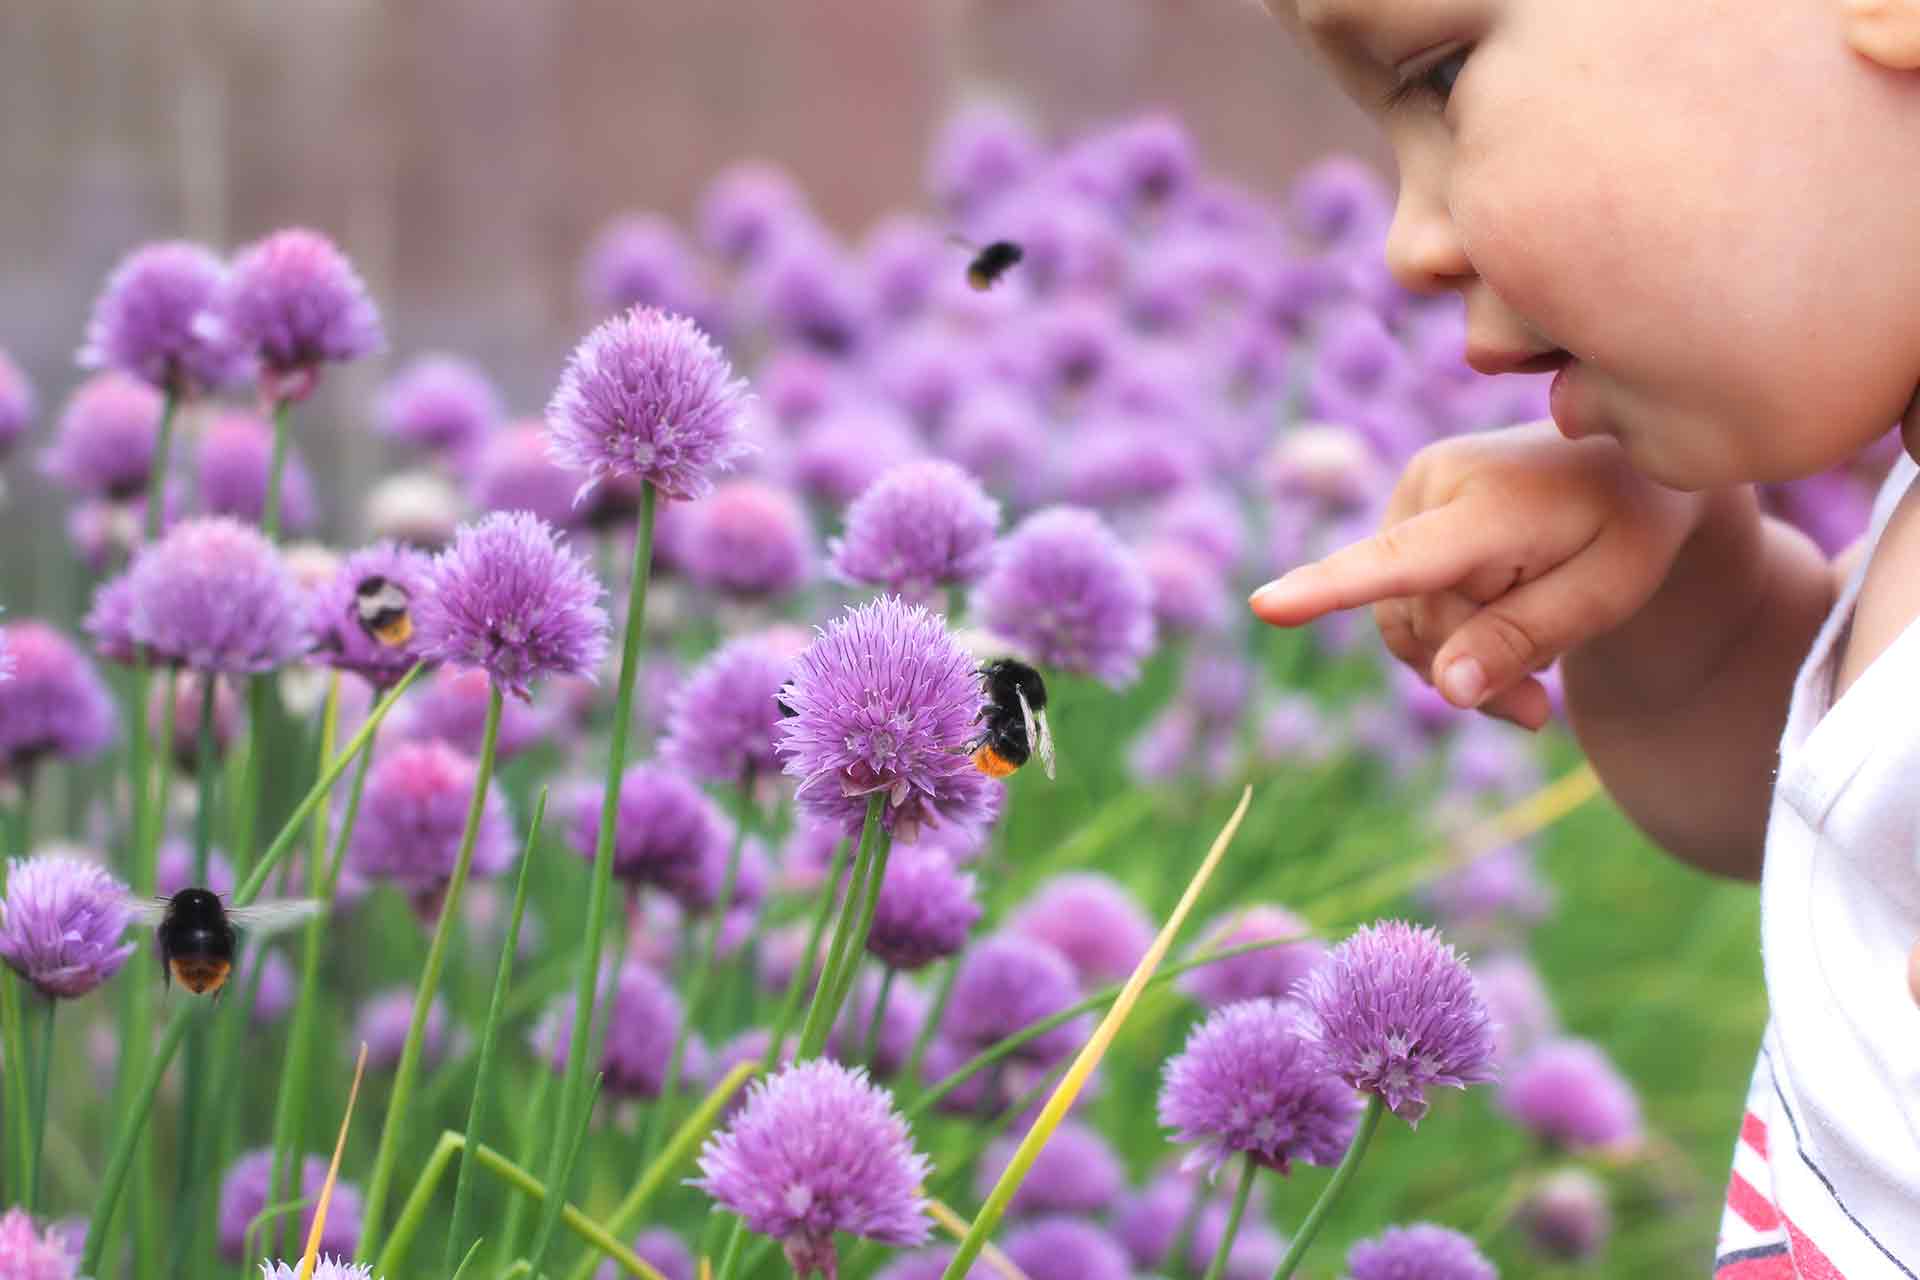 Sensory garden ideas for children